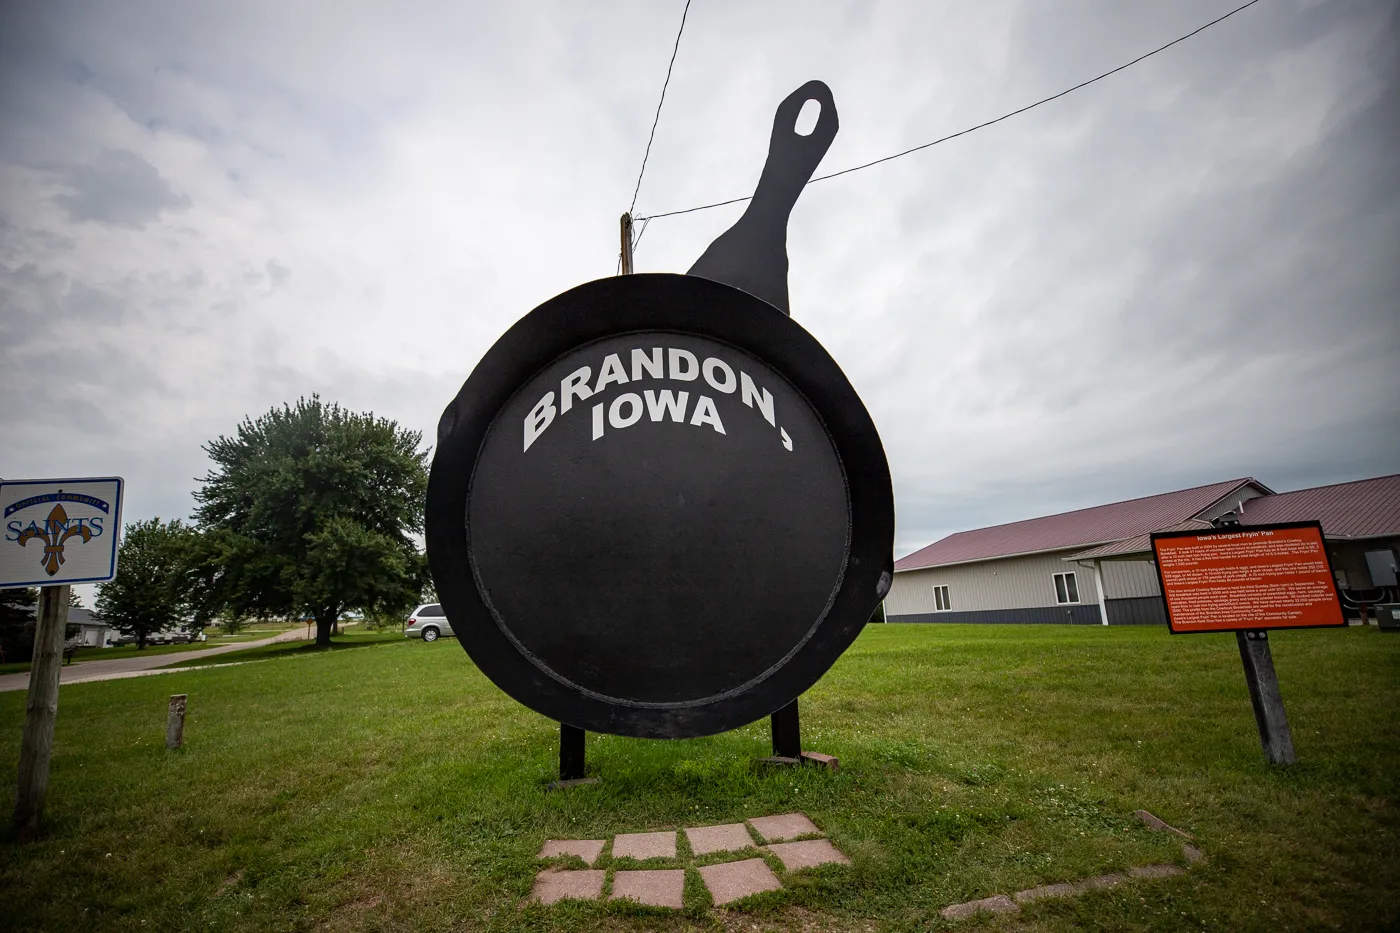 Iowa's Largest Frying Pan in Brandon, Iowa - Roadside Attraction for an Iowa Road Trip